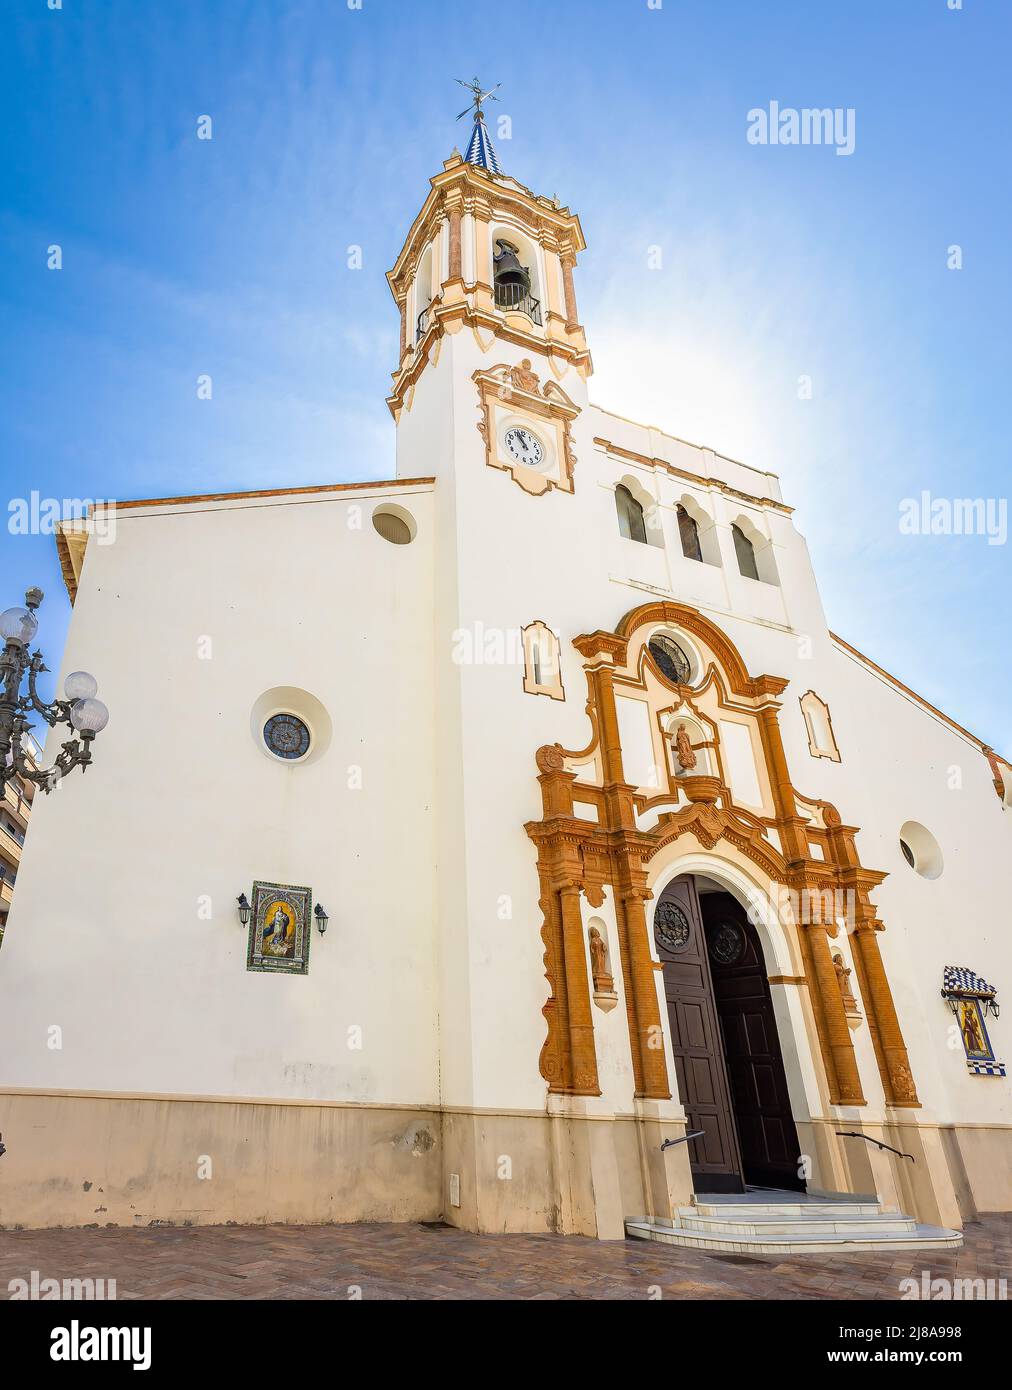 Iglesia de la Concepcion (Church of the Conception), in Huelva, Andalusia, Spain Stock Photo